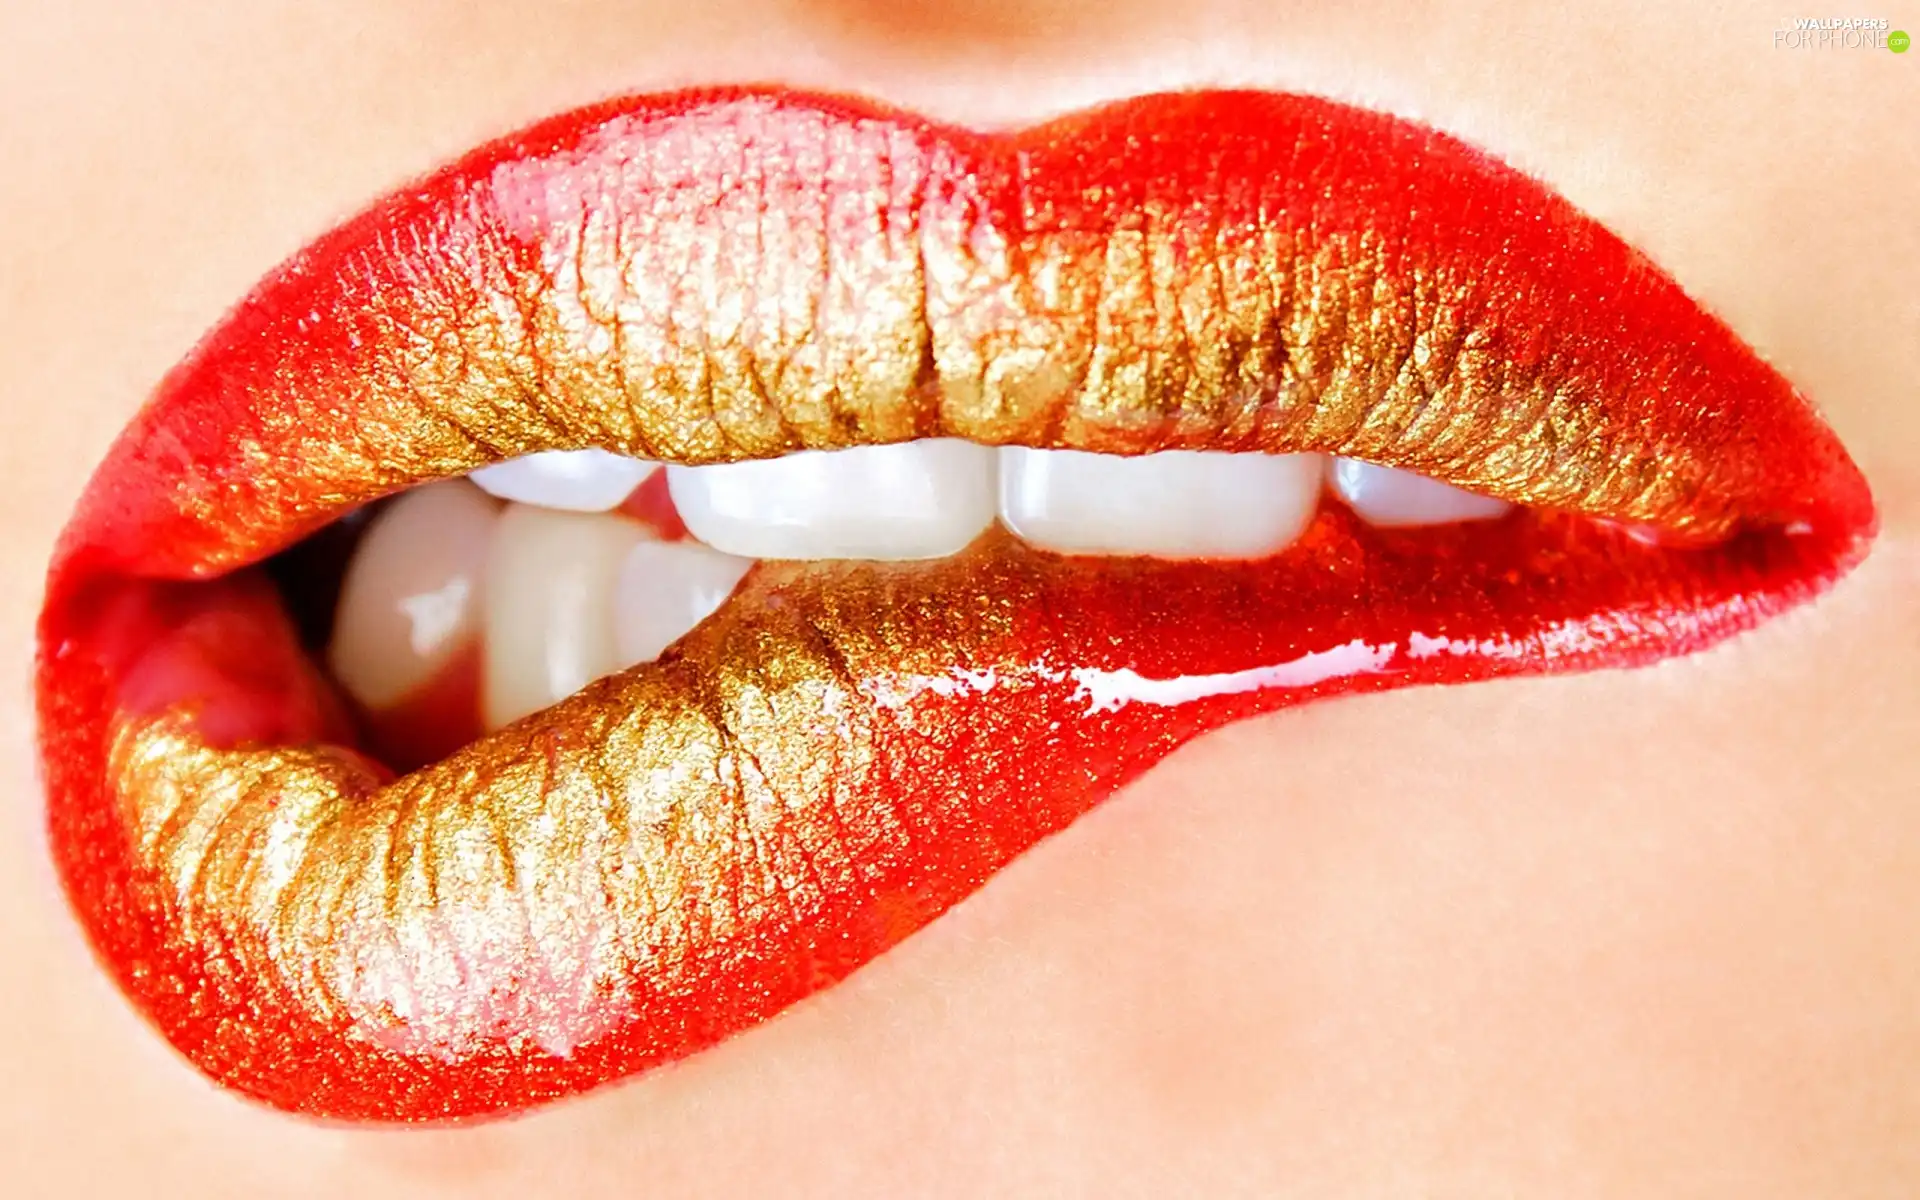 Teeth, Red, lips